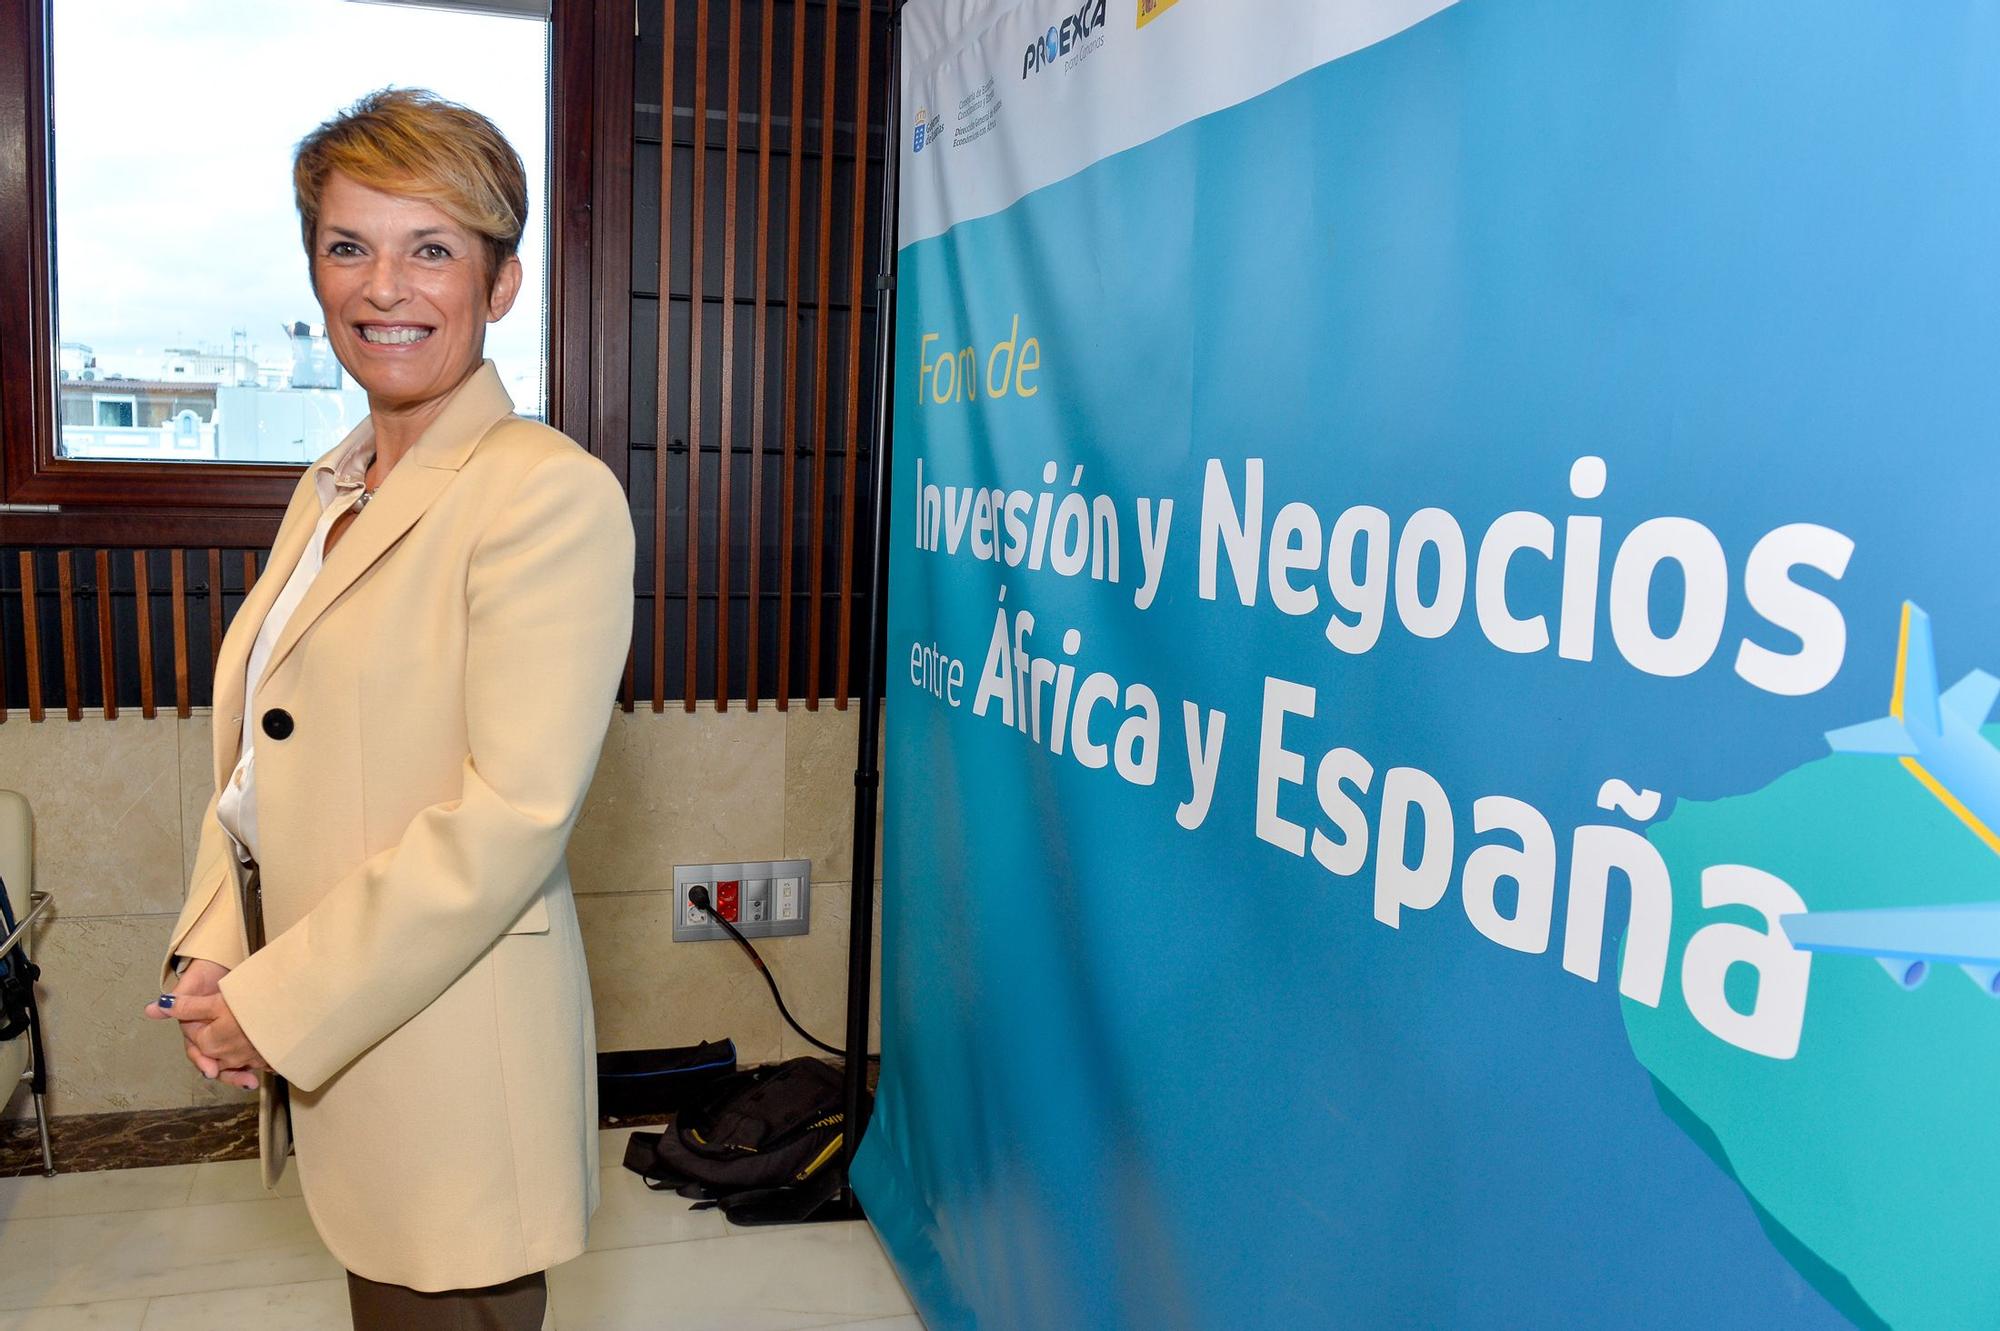 Foro de Inversión y Negocios África-España